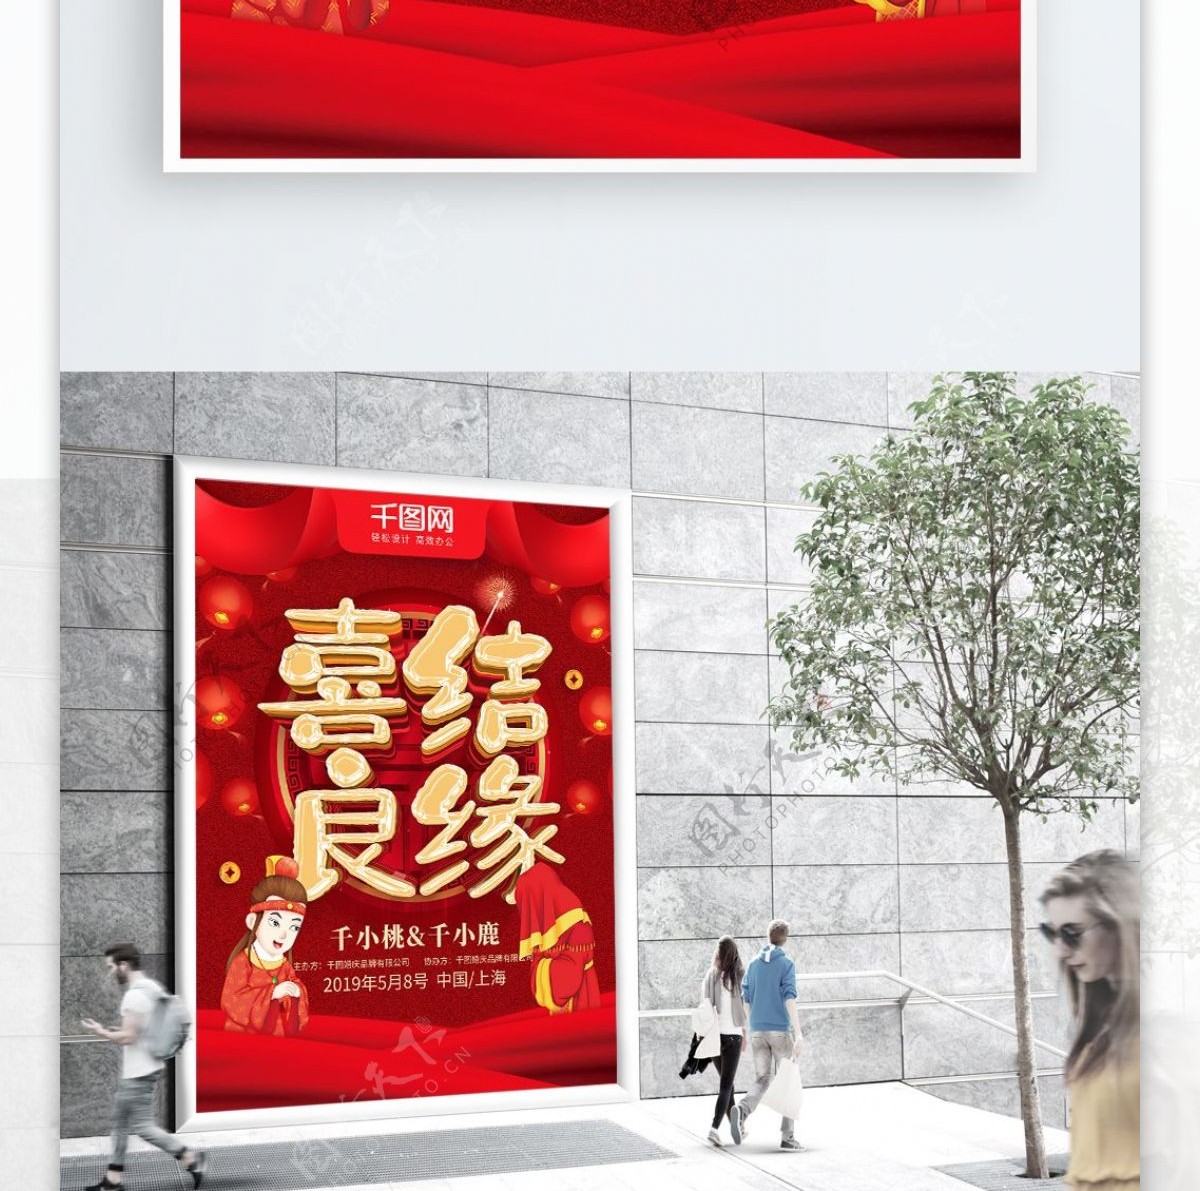 红色喜庆喜结良缘中式婚礼宣传海报